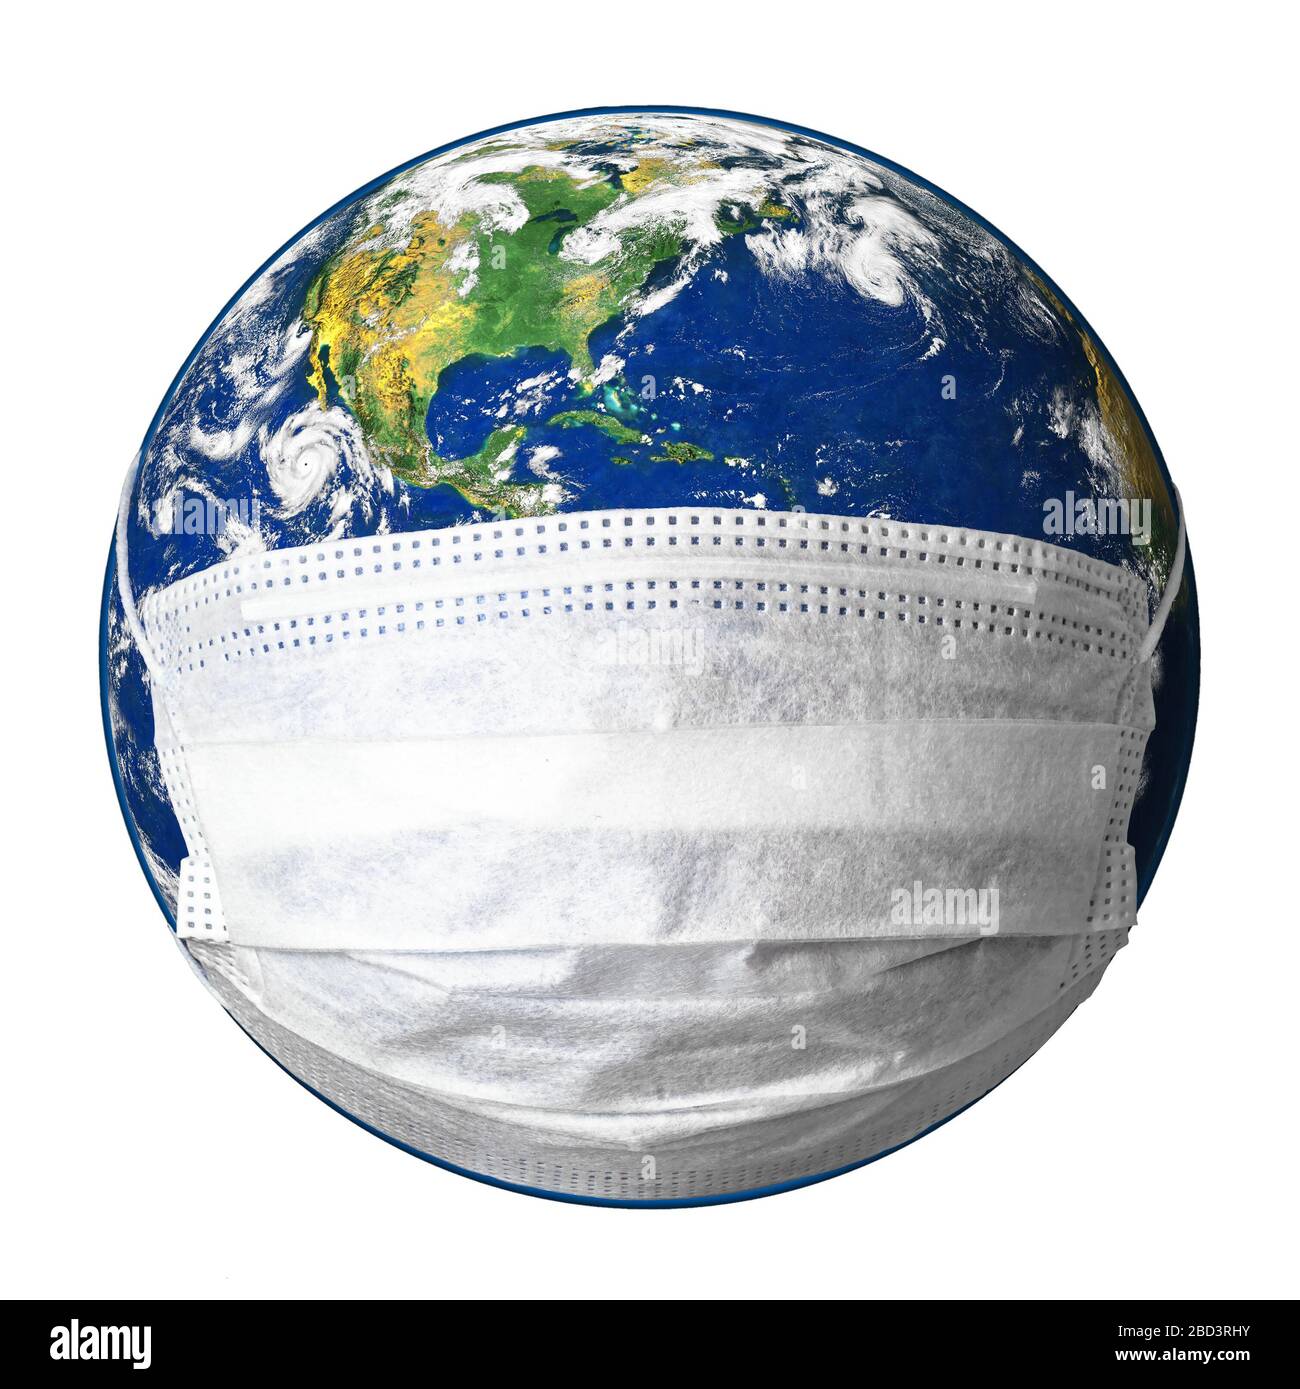 Erde in medizinischer Maske isoliert auf weißem Hintergrund, Konzept von Coronavirus in der Welt, COVID-19 Pandemie und Sicherheit. Globus mit Schutz vor Corona viru Stockfoto